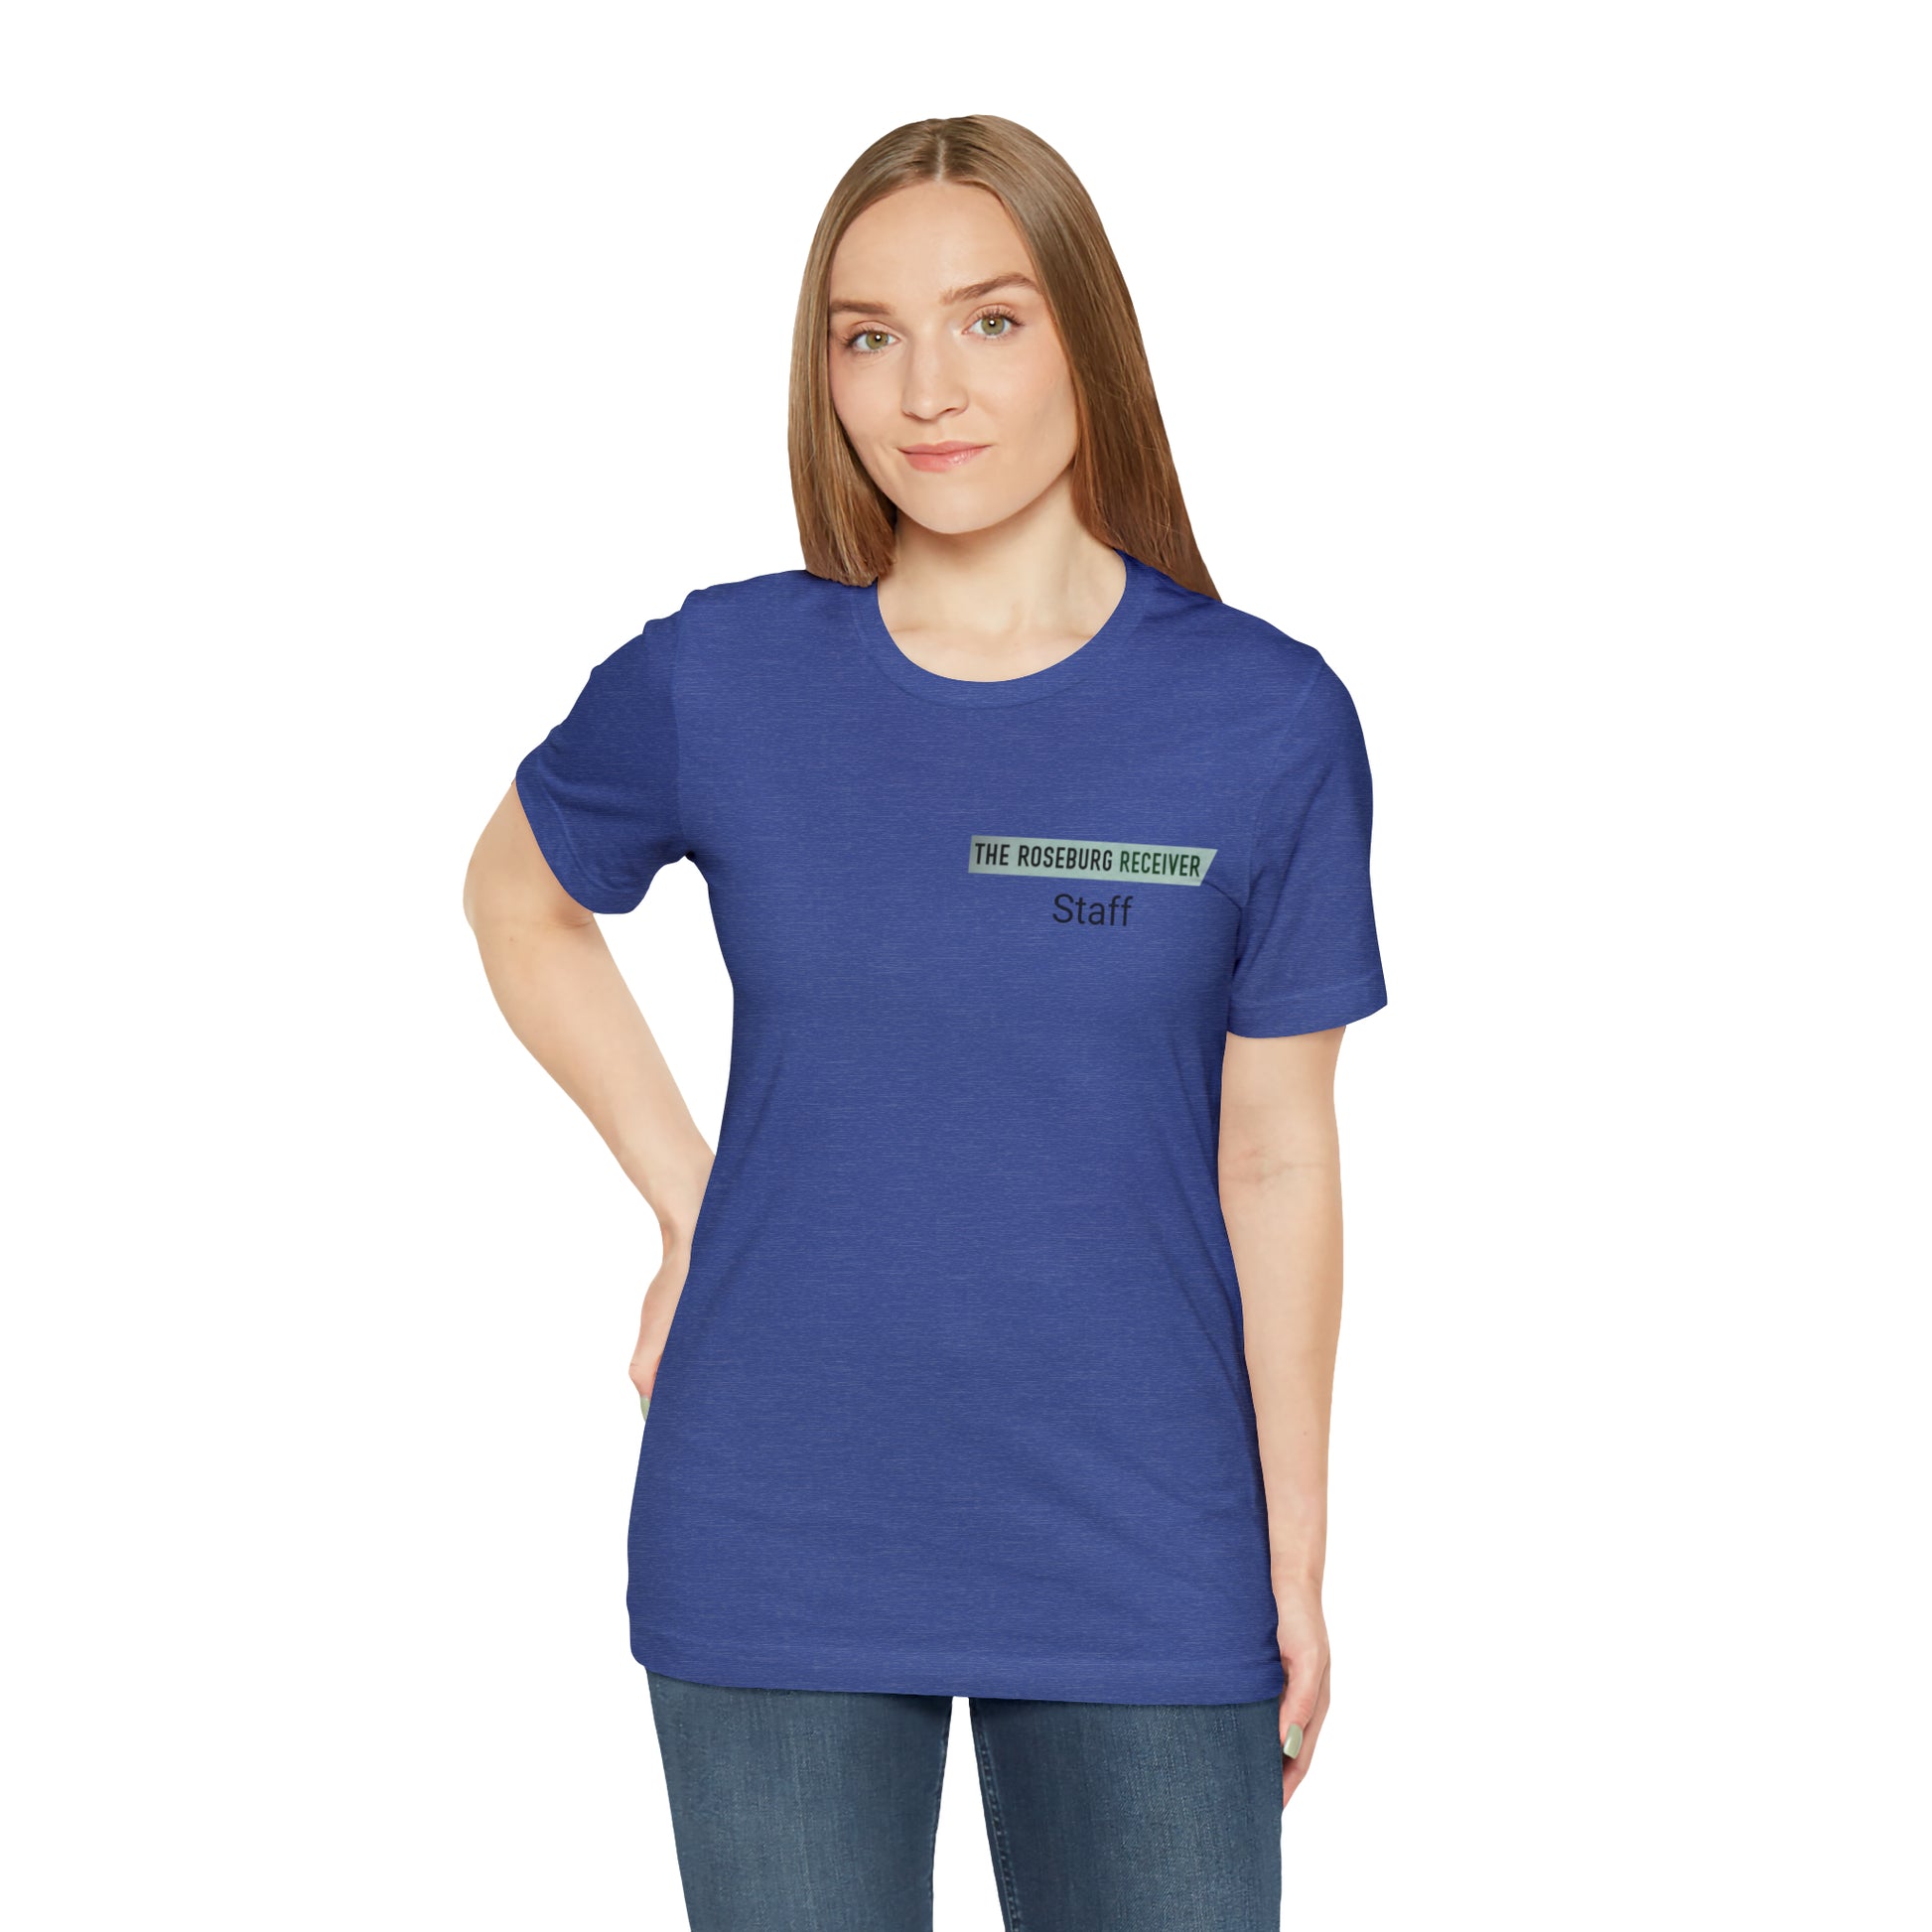 Roseburg Receiver Staff - Unisex Short Sleeve Tee - CrazyTomTShirts